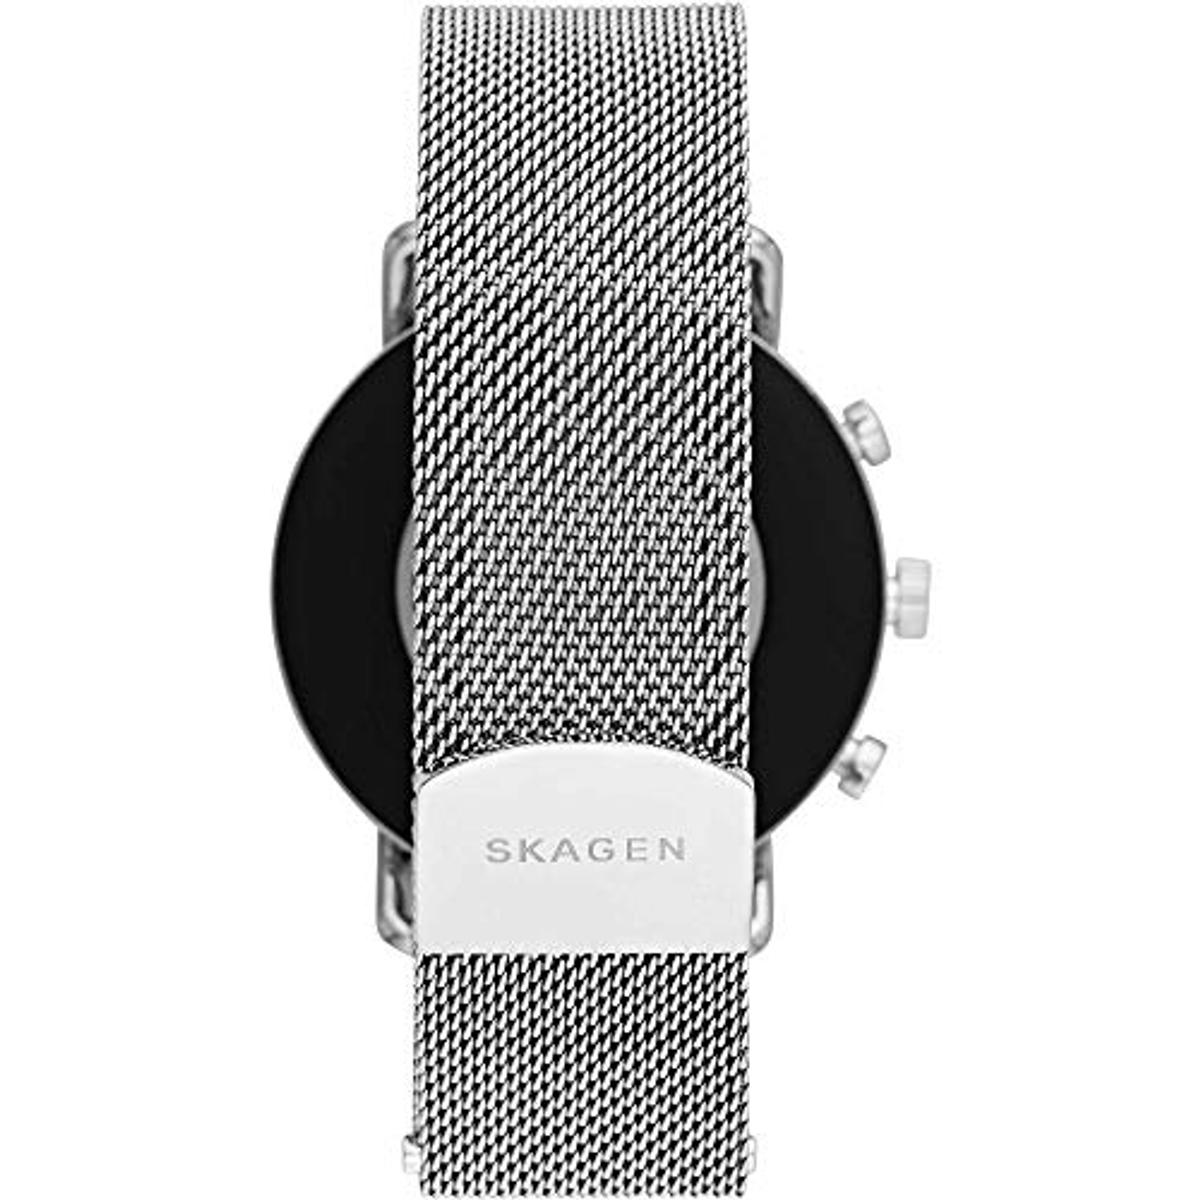 SKT5102 mm, Edelstahl Skagen Smartwatch silicone, 185 SKAGEN Smartwatch Silver/Black